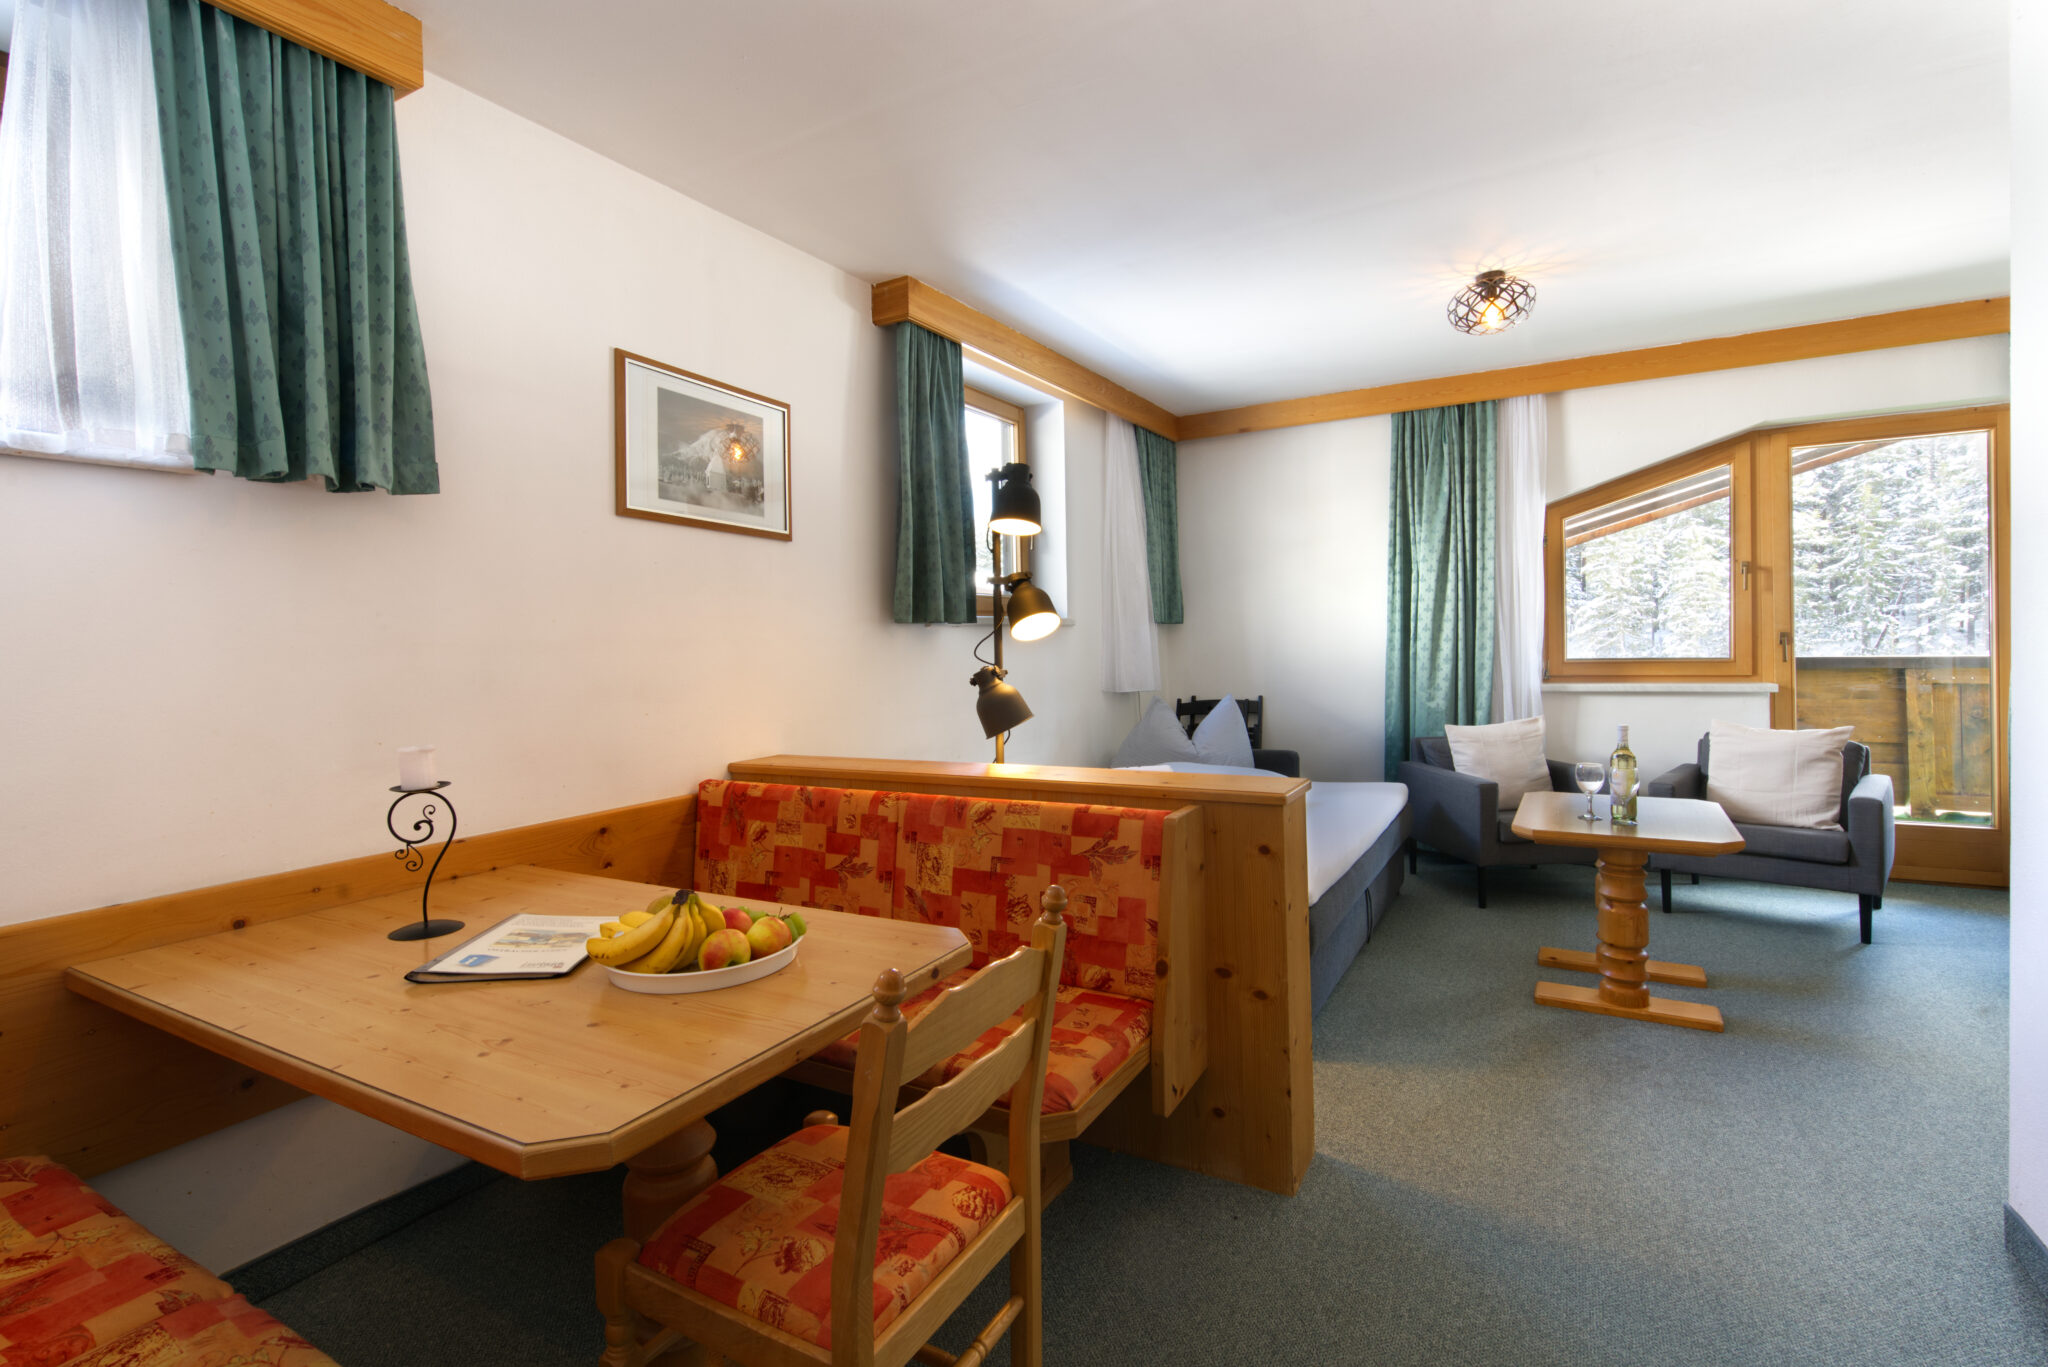 Appartementenhuis Ostbacher Stern in Tirol Oostenrijk (Woning type D)  met 2 slaapkamers douche/bad